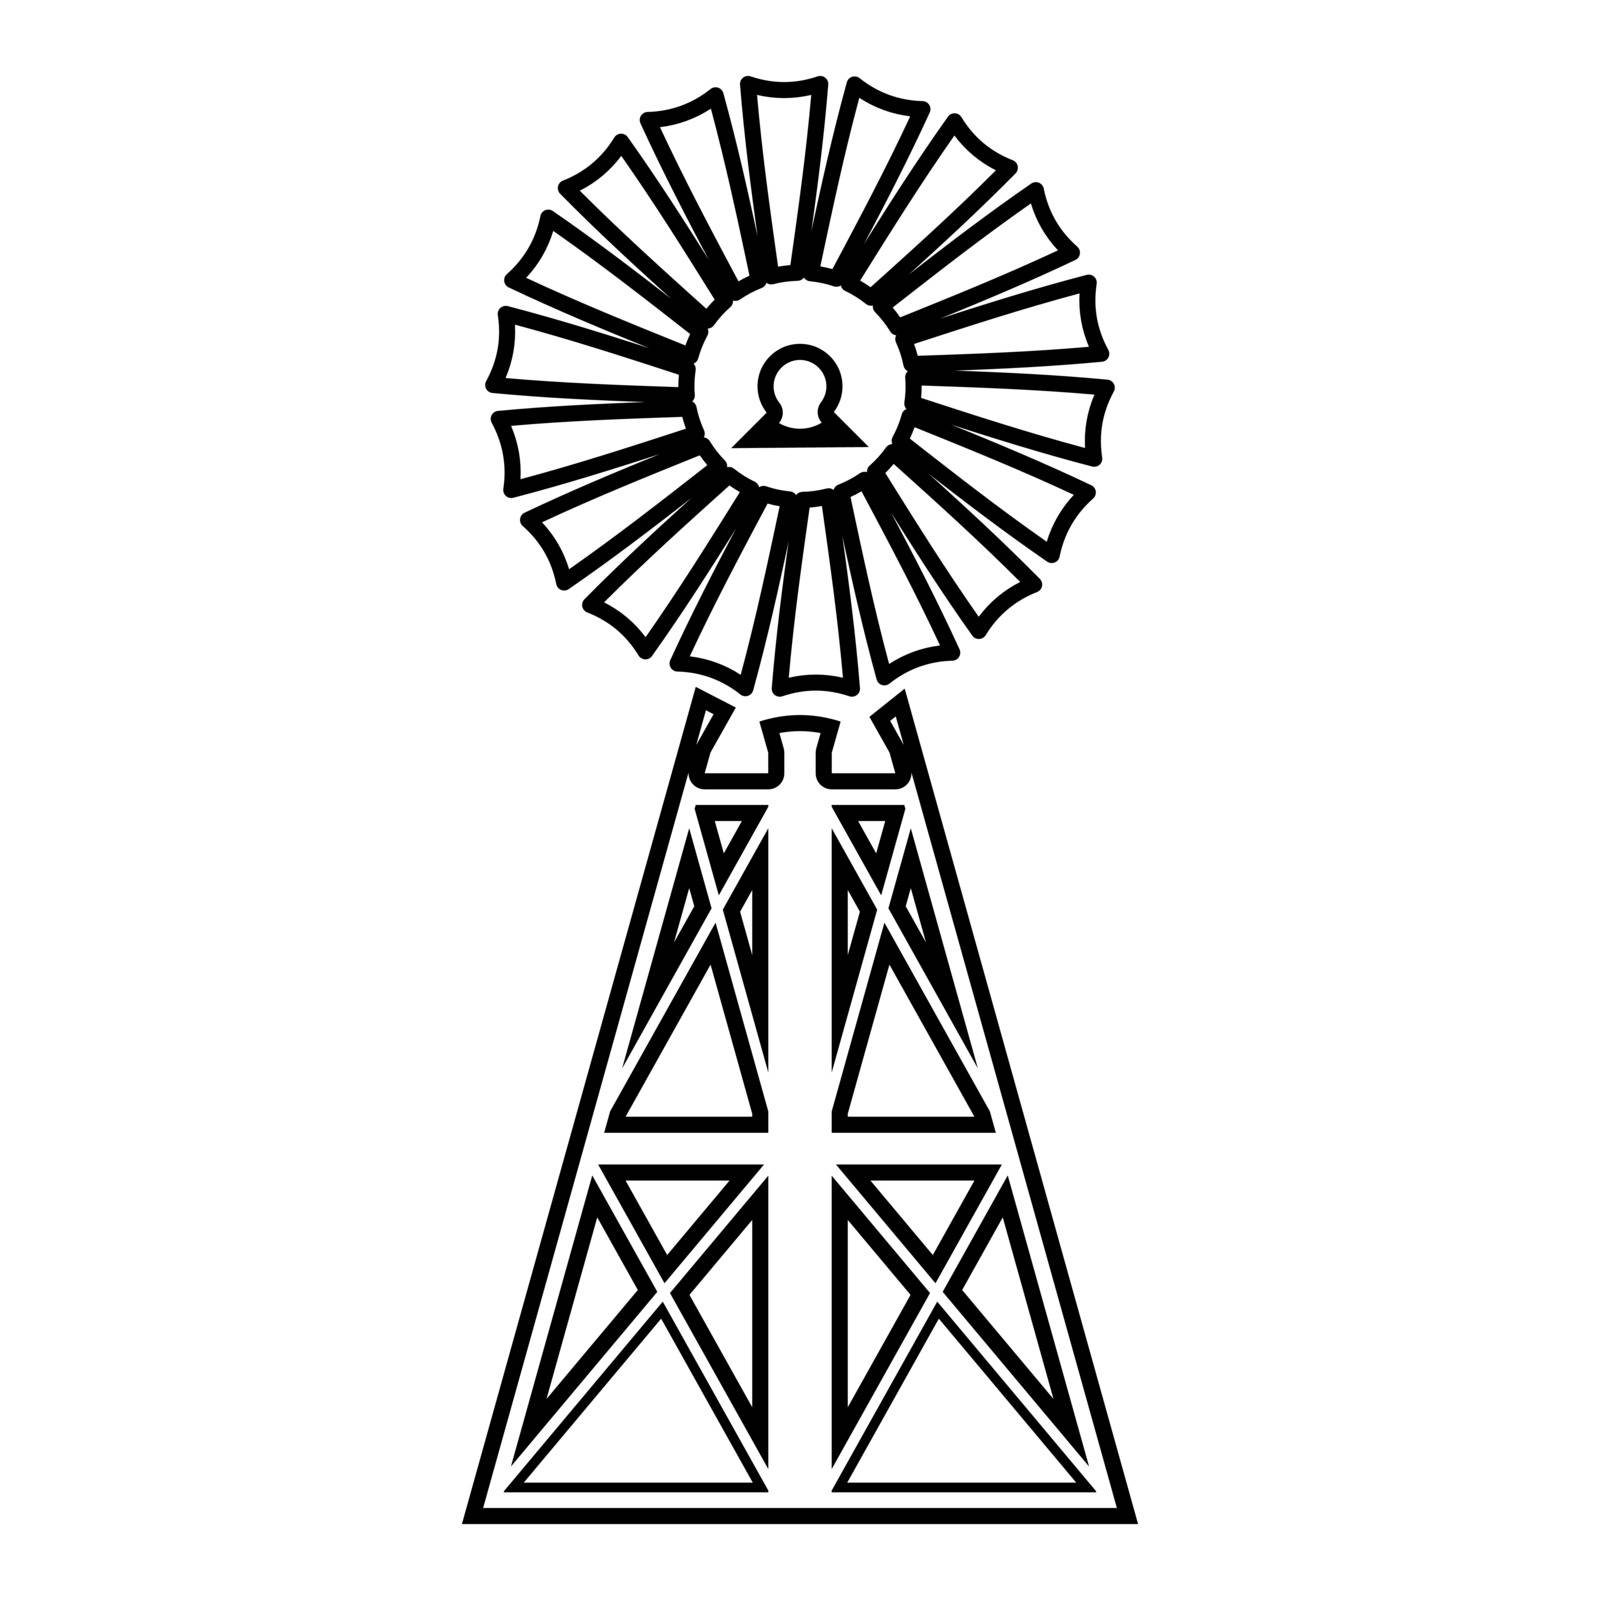 Wind turbine windmill classic american icon black colour image